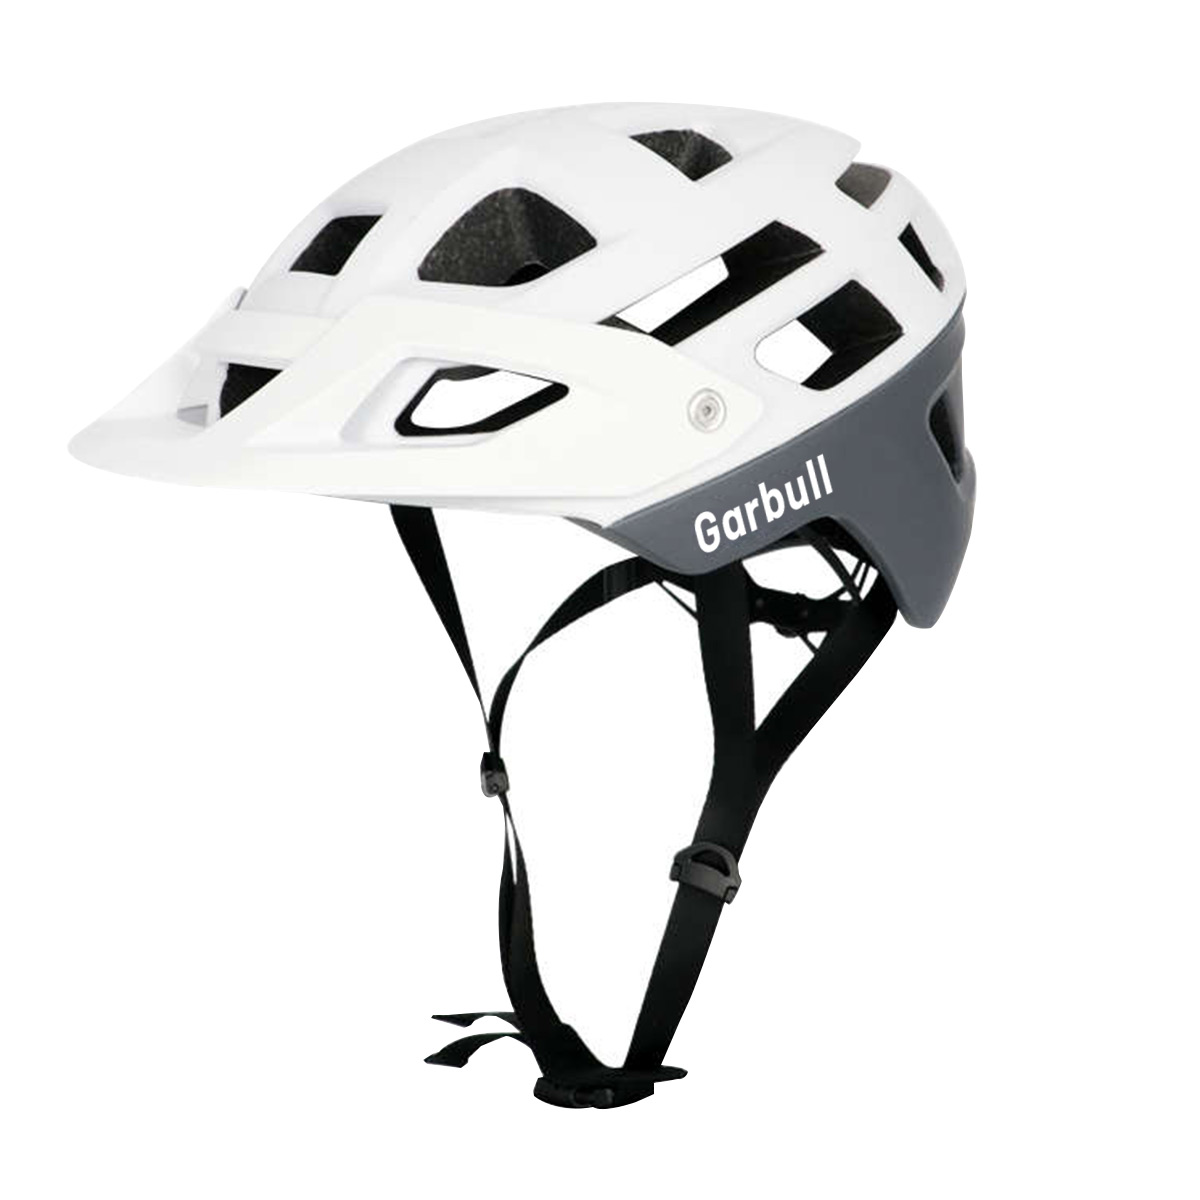 PROSCENIC Helm cm, weiß) cm Mountainbike, 55-59